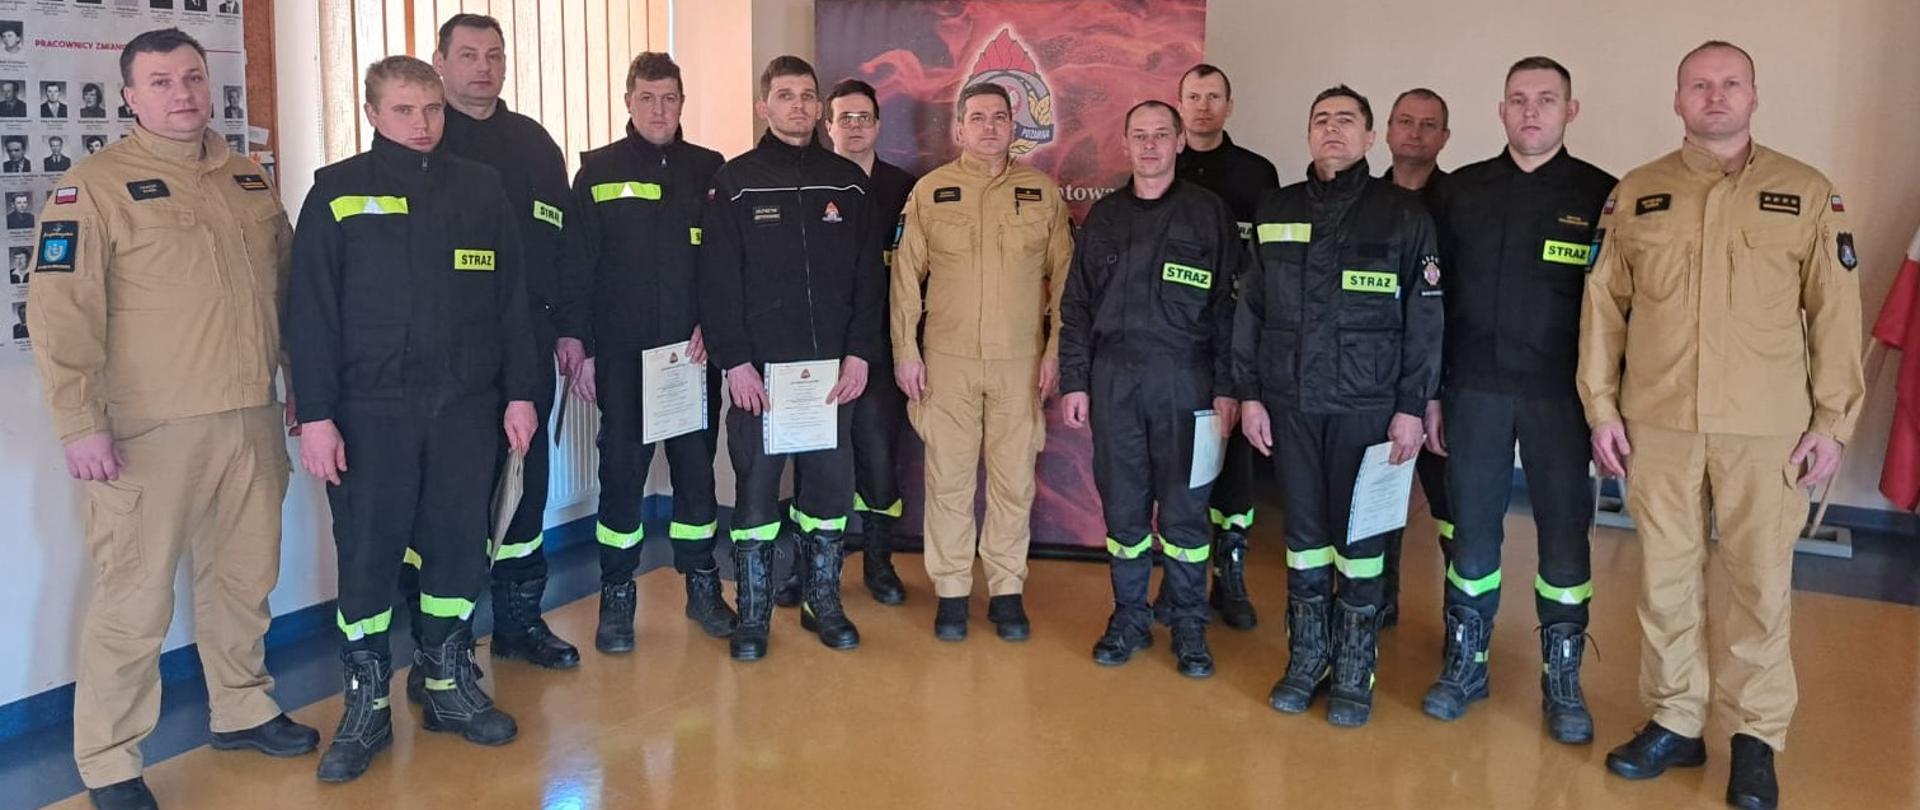 Strażacy - ratownicy Ochotniczych Straży Pożarnych z Komendantem Powiatowym PSP oraz członkami komisji egzaminacyjnej